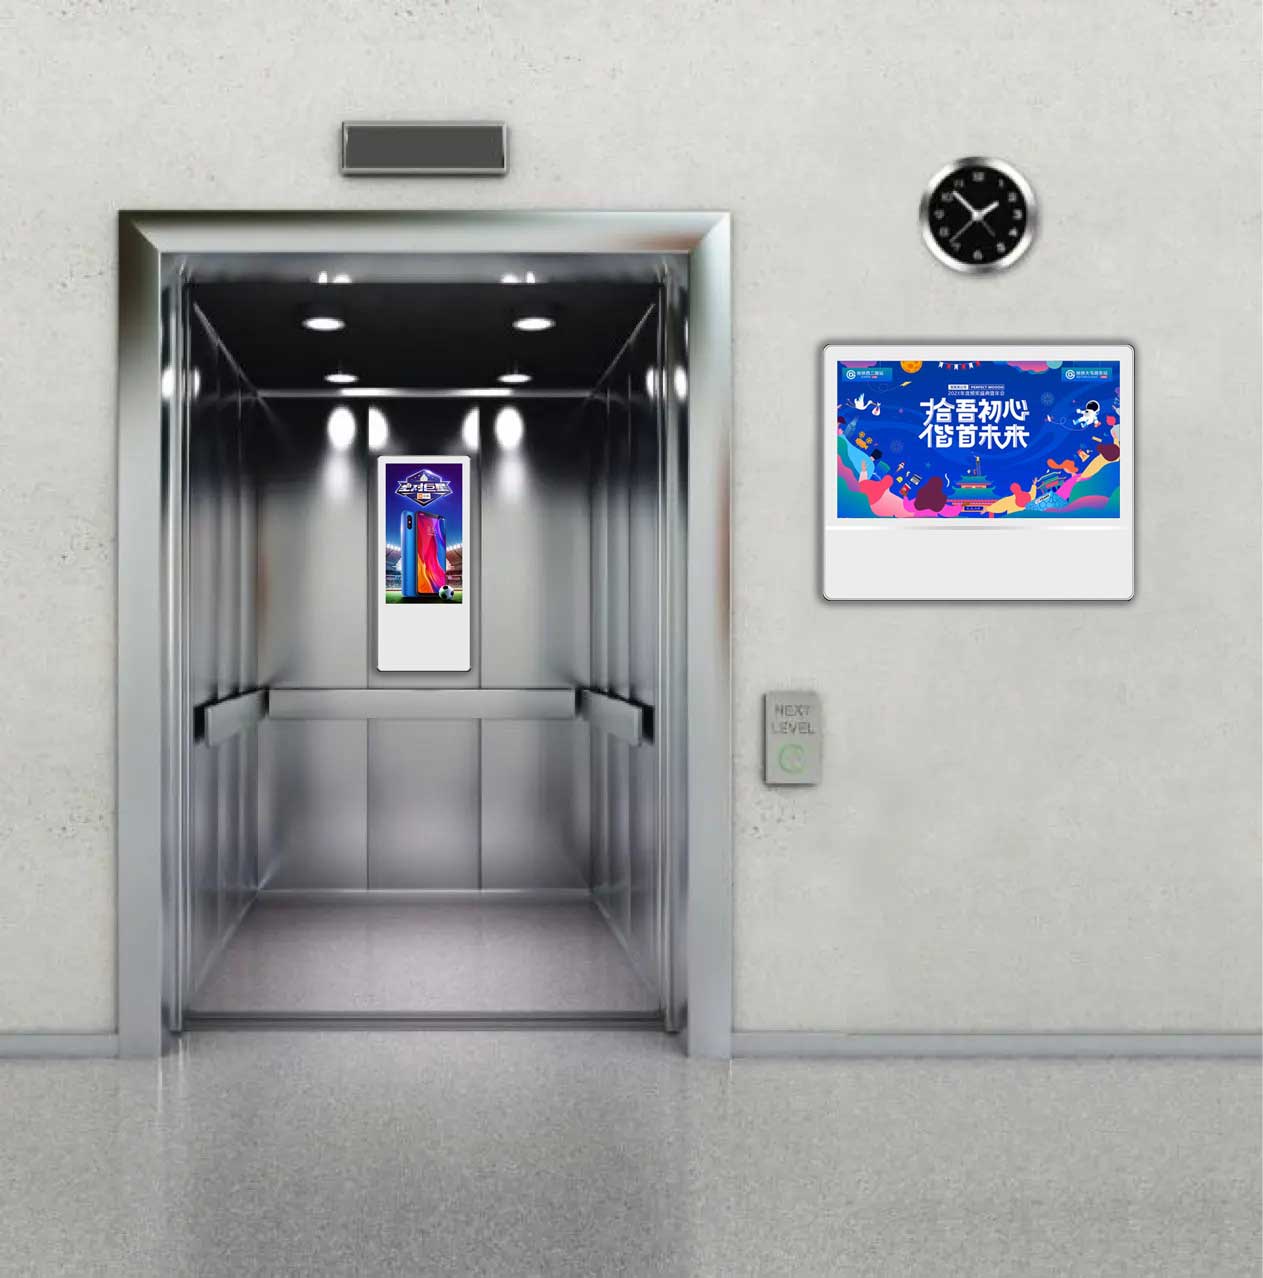 Schermo LCD pubblicitario digitale in cabina ascensore